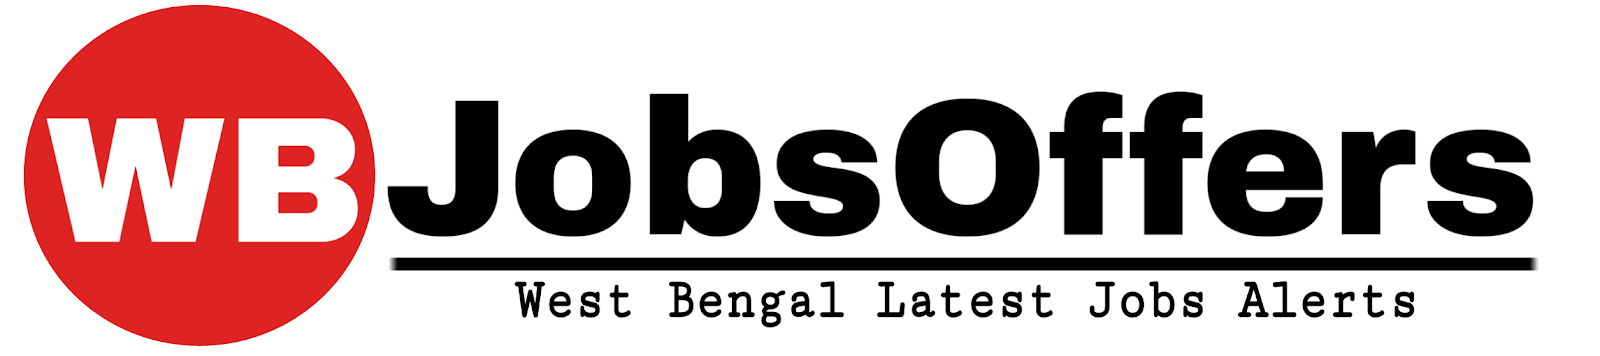 Jobsoffers | West Bengal Job & Recruitment News | Govt Jobs News